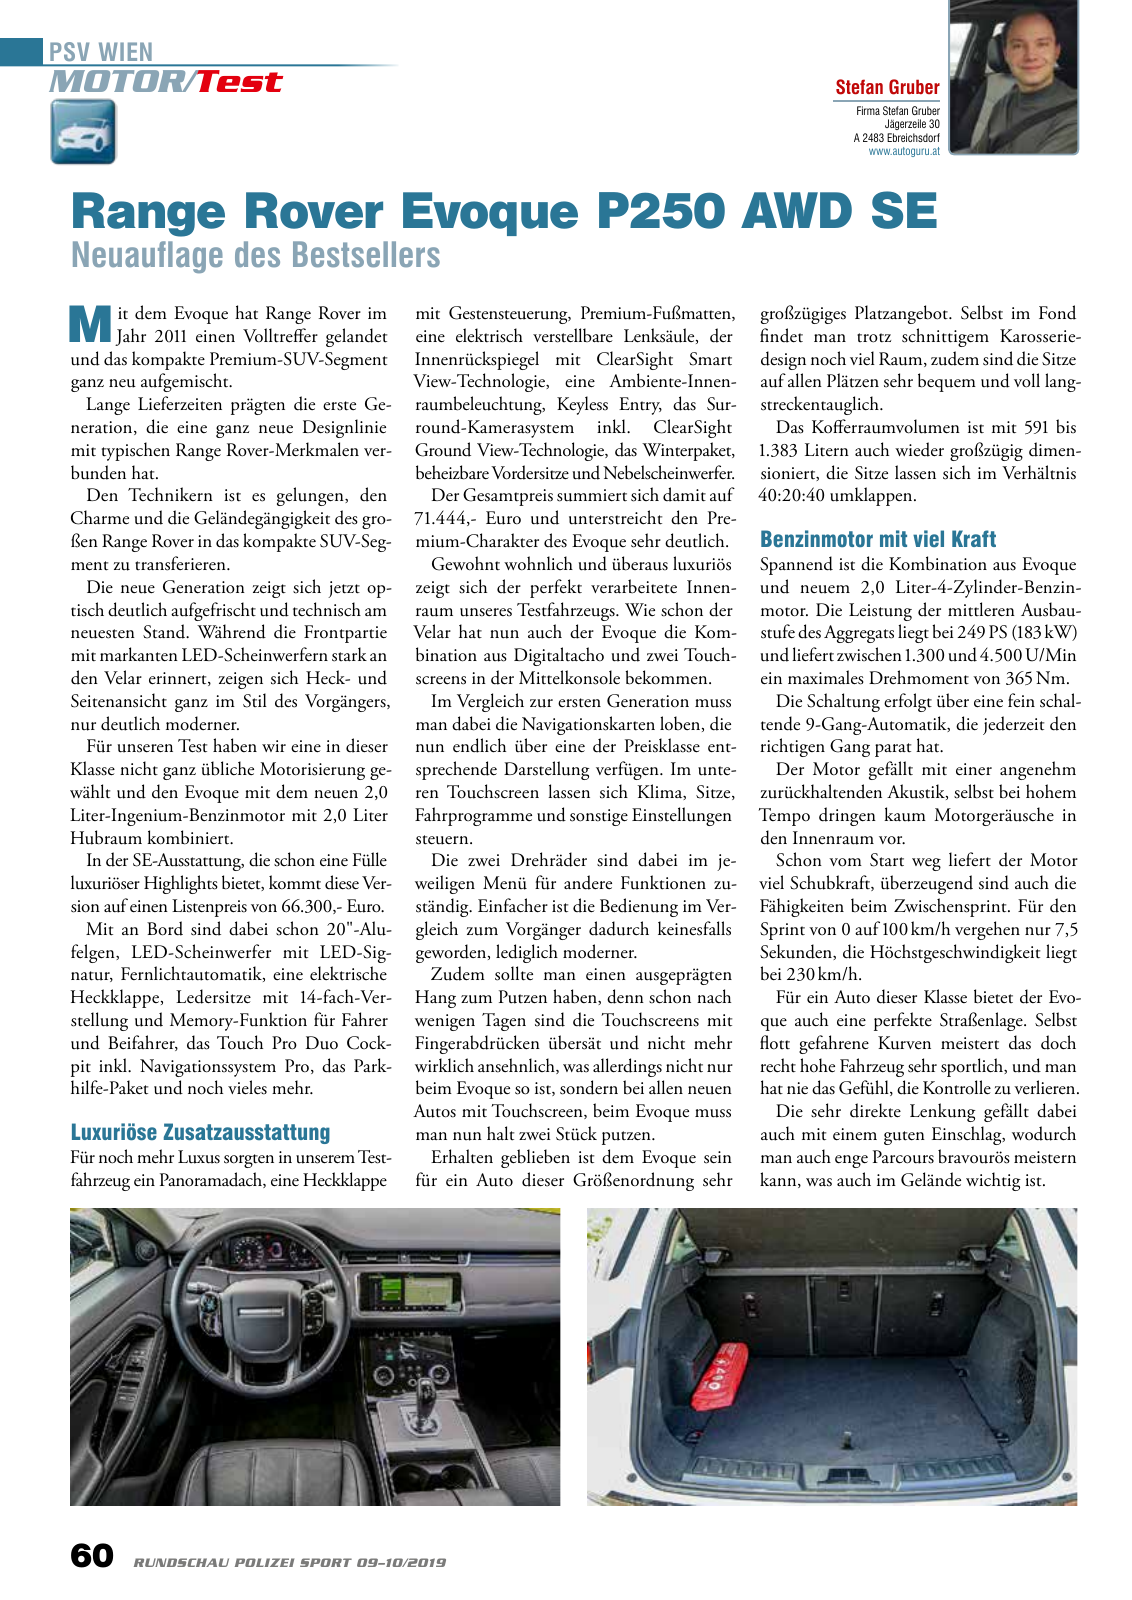 Vorschau Rundschau Polizei Sport 09-10/2019 Seite 60